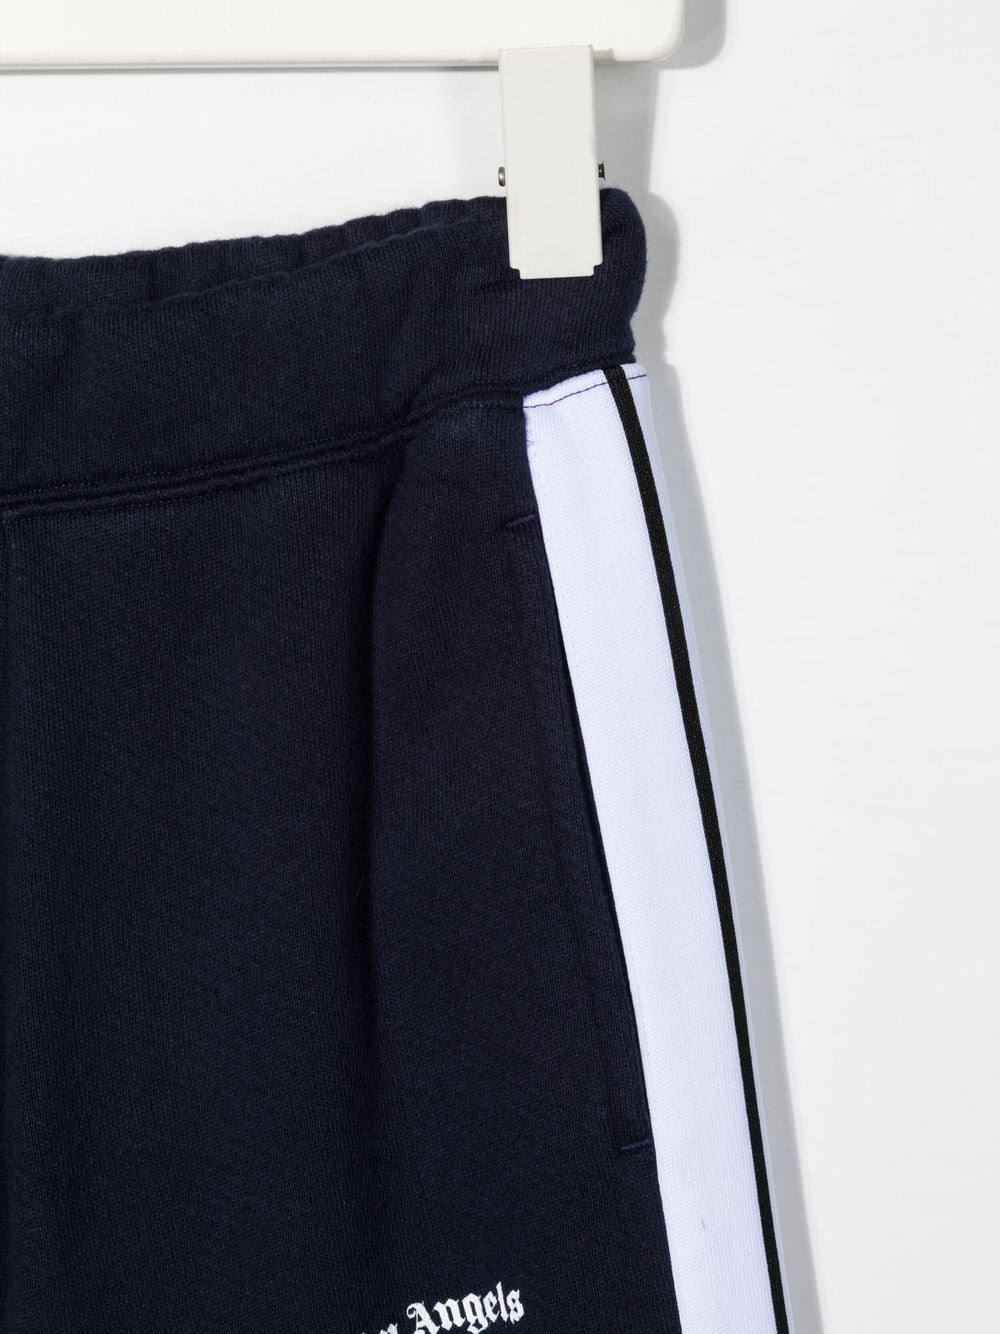 Pantaloni sportivi con banda laterale stampata con logo